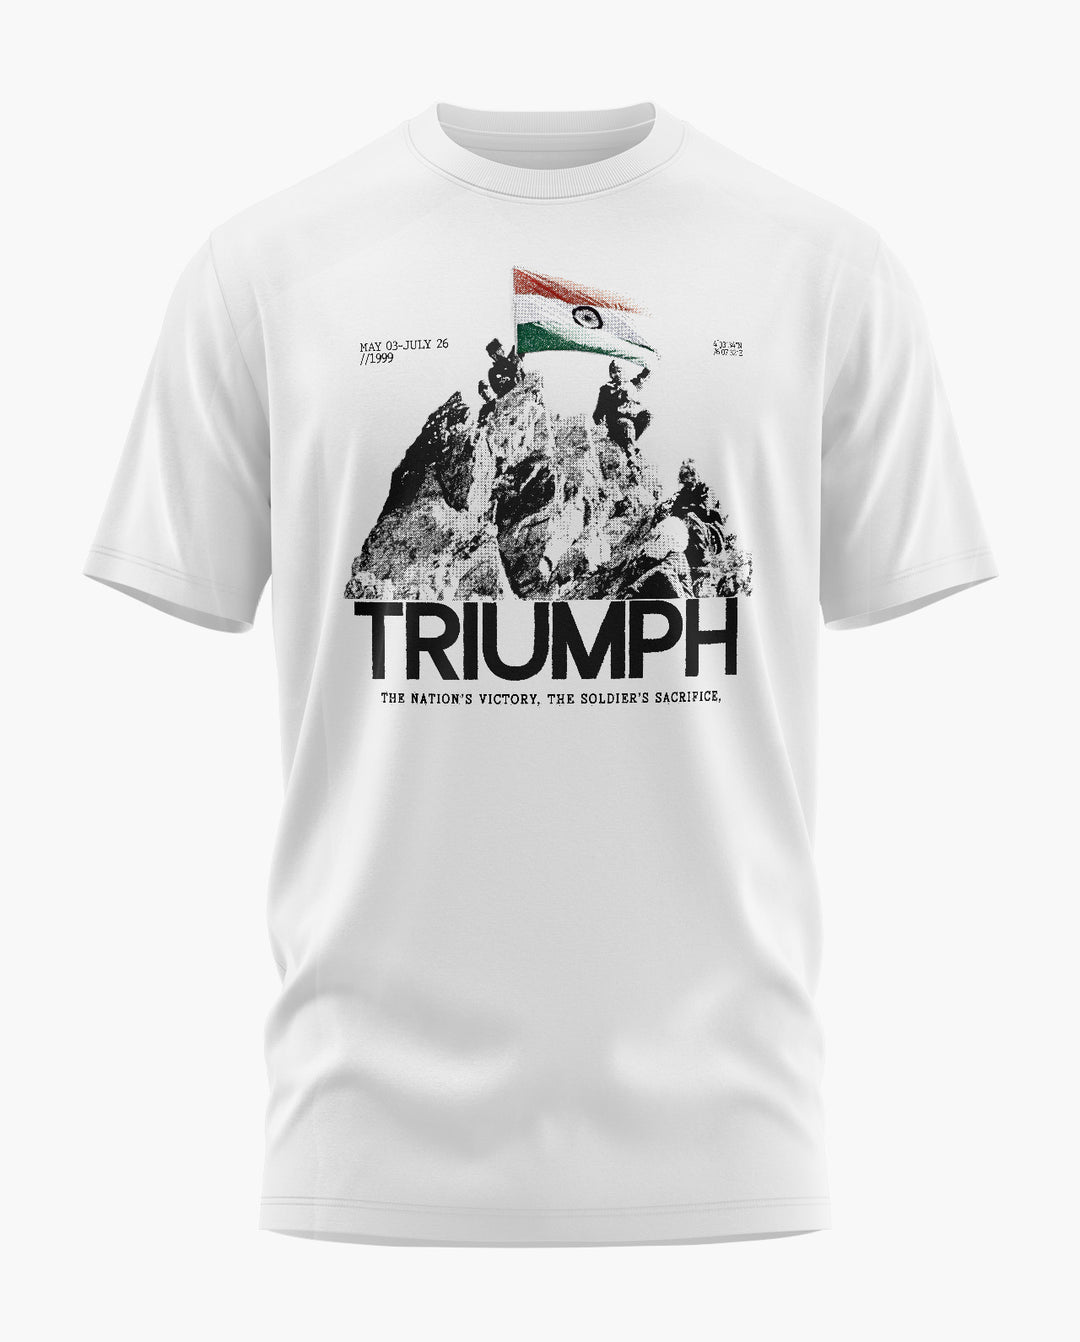 TRIUMPH 1999 T-Shirt